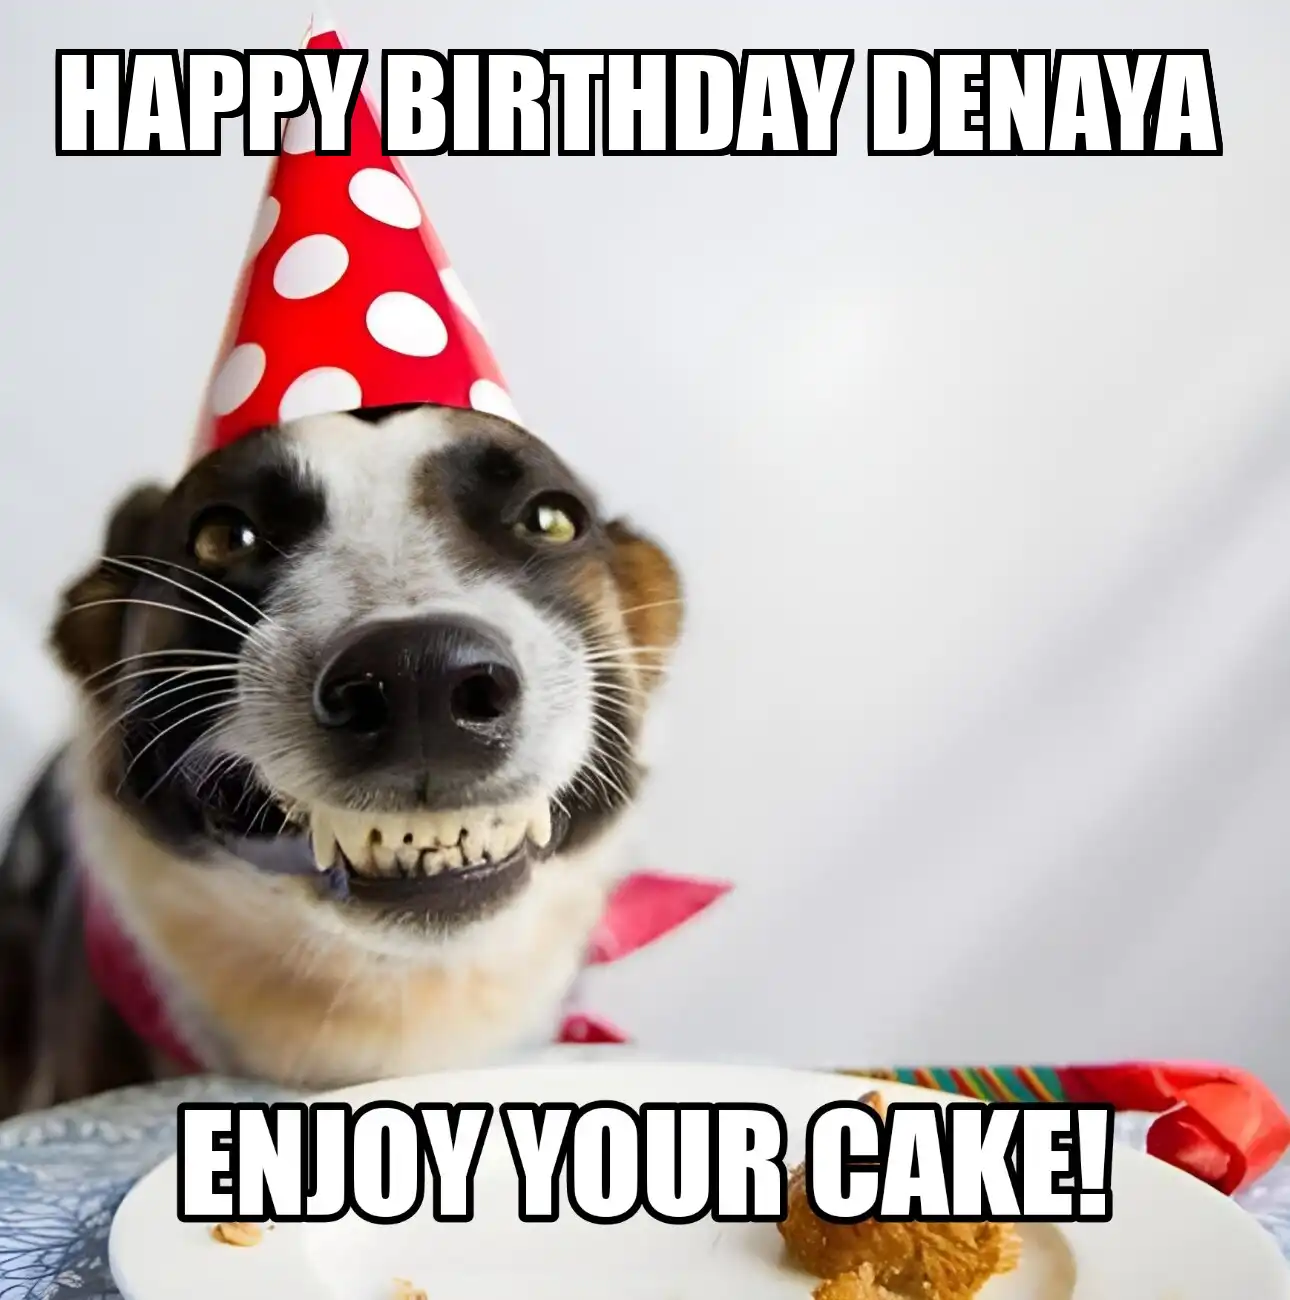 Happy Birthday Denaya Enjoy Your Cake Dog Meme